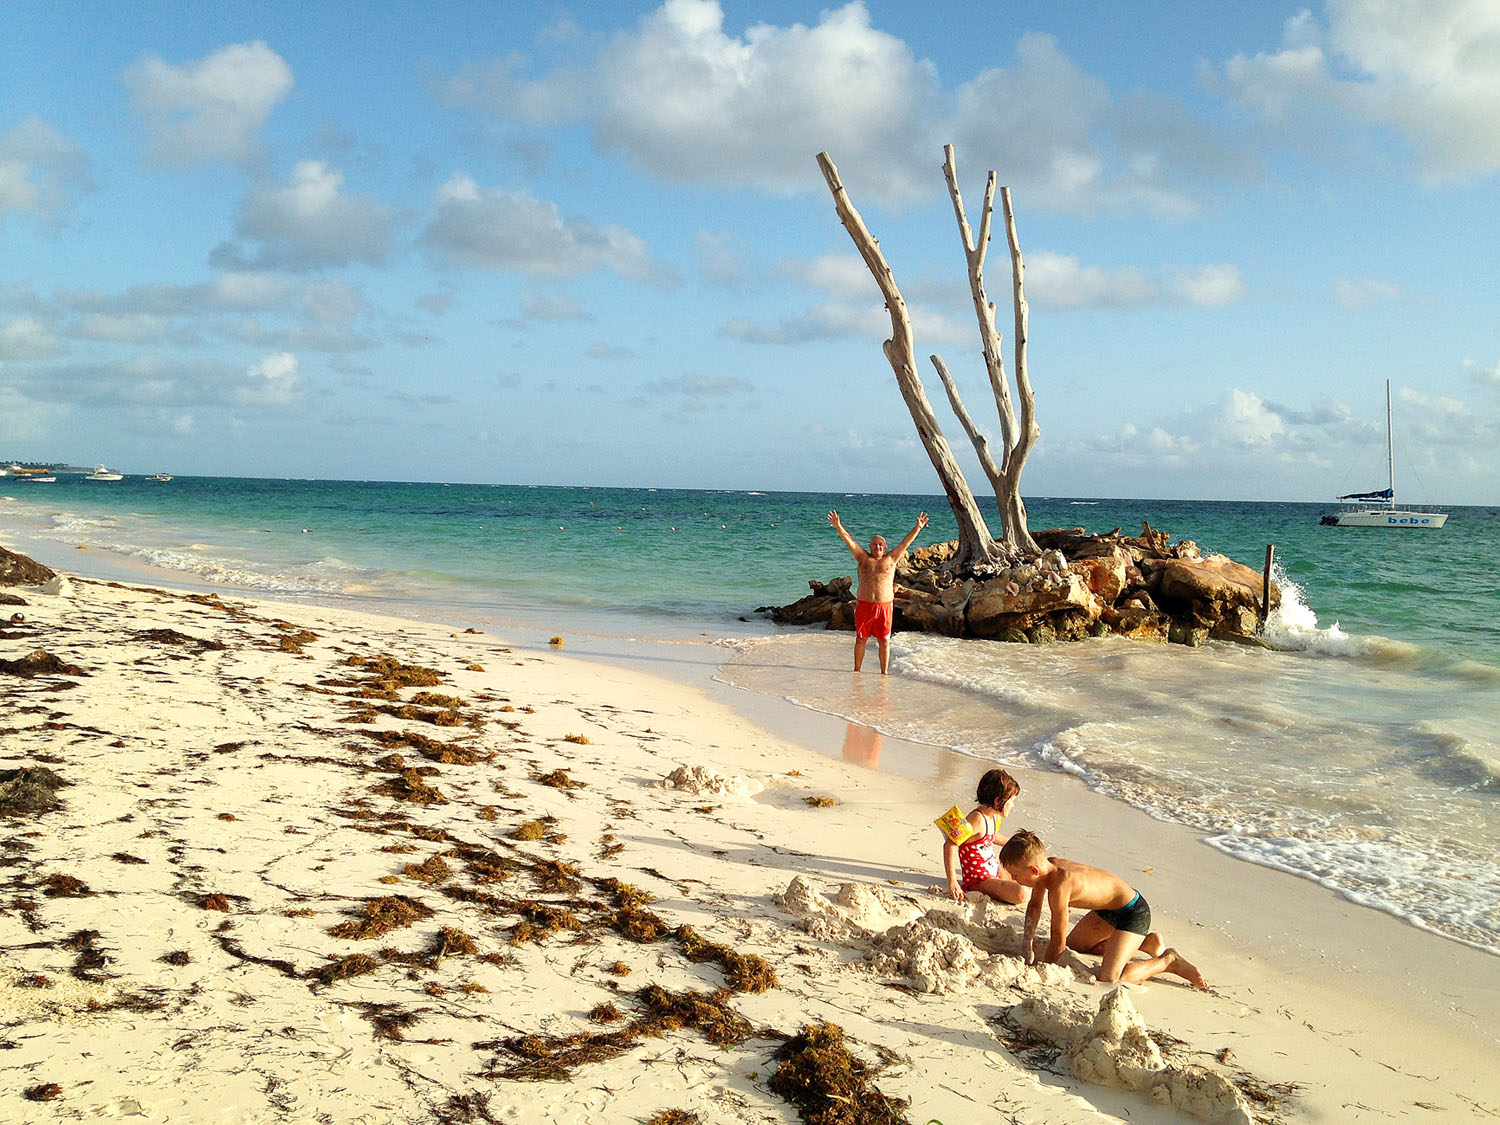 Dominika egy egészen más éghajlati övben van, mint Magyarország